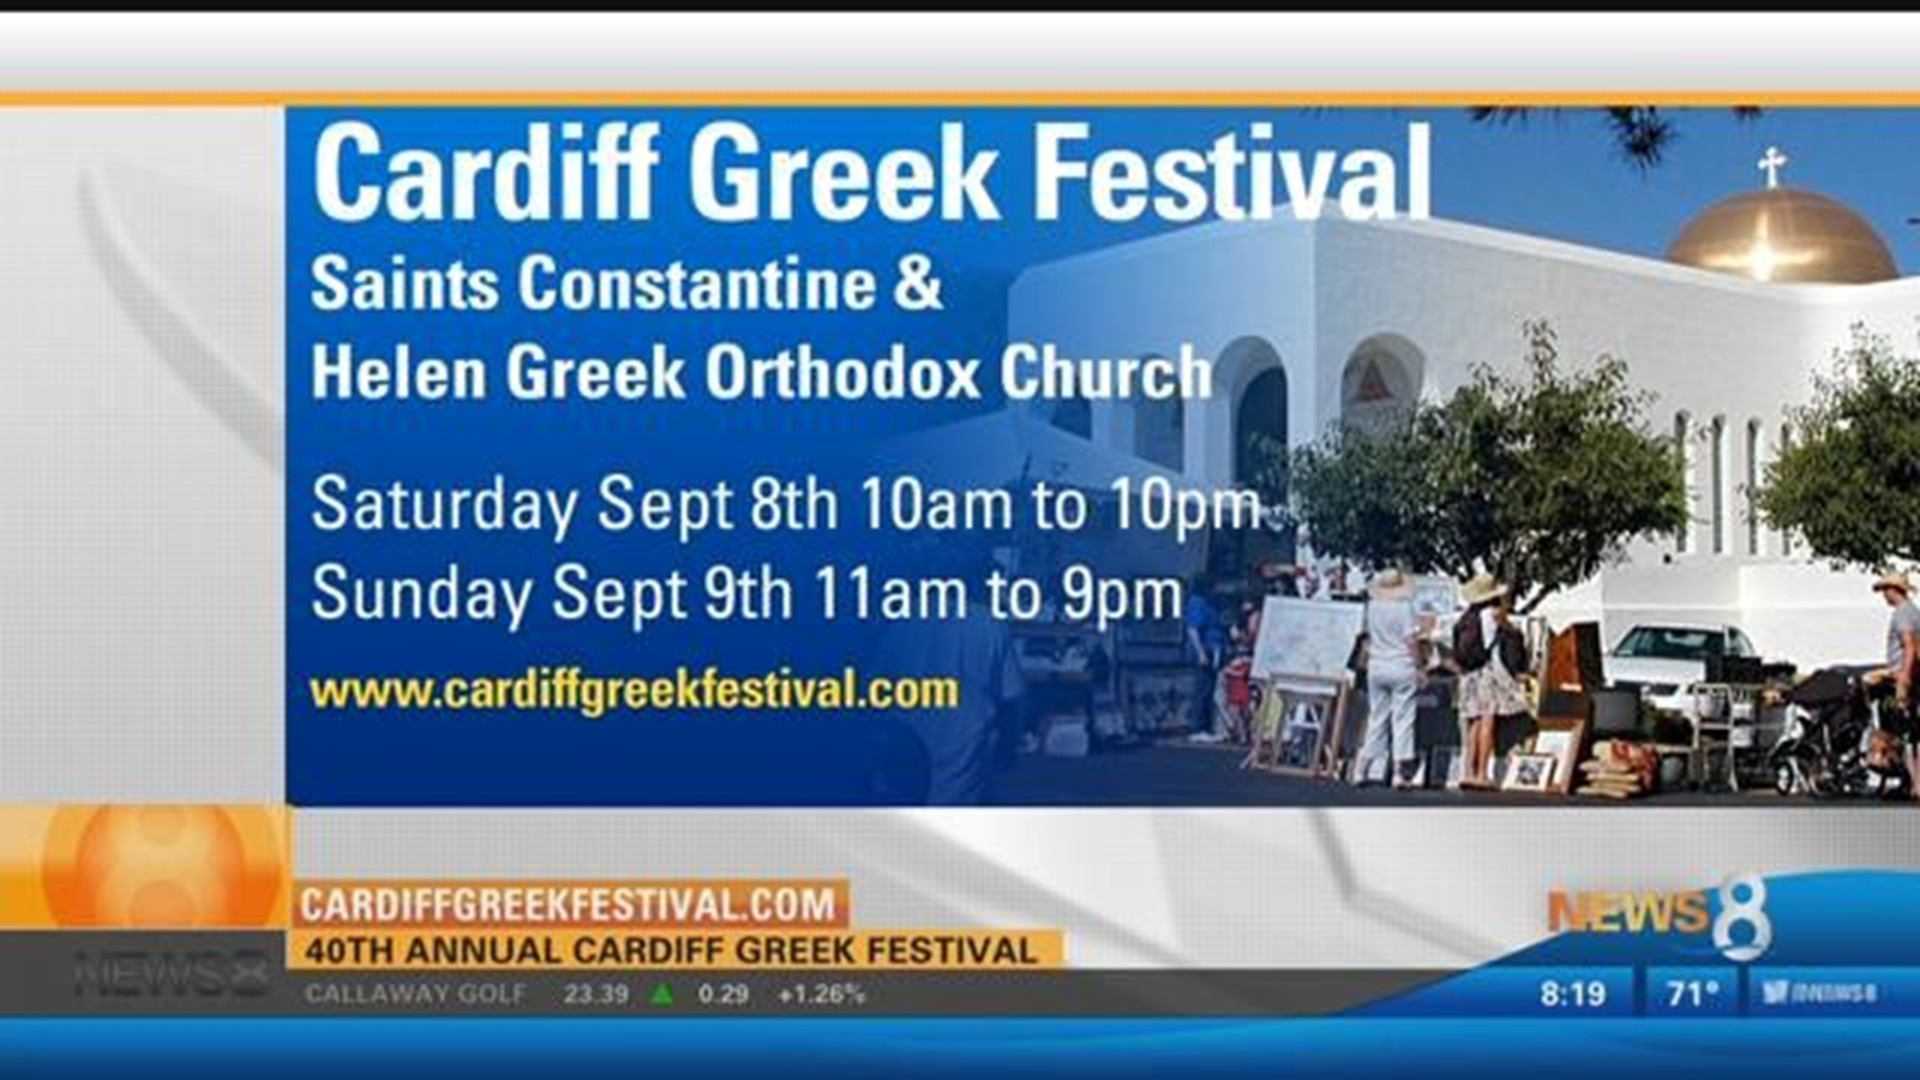 40th annual Cardiff Greek Festival